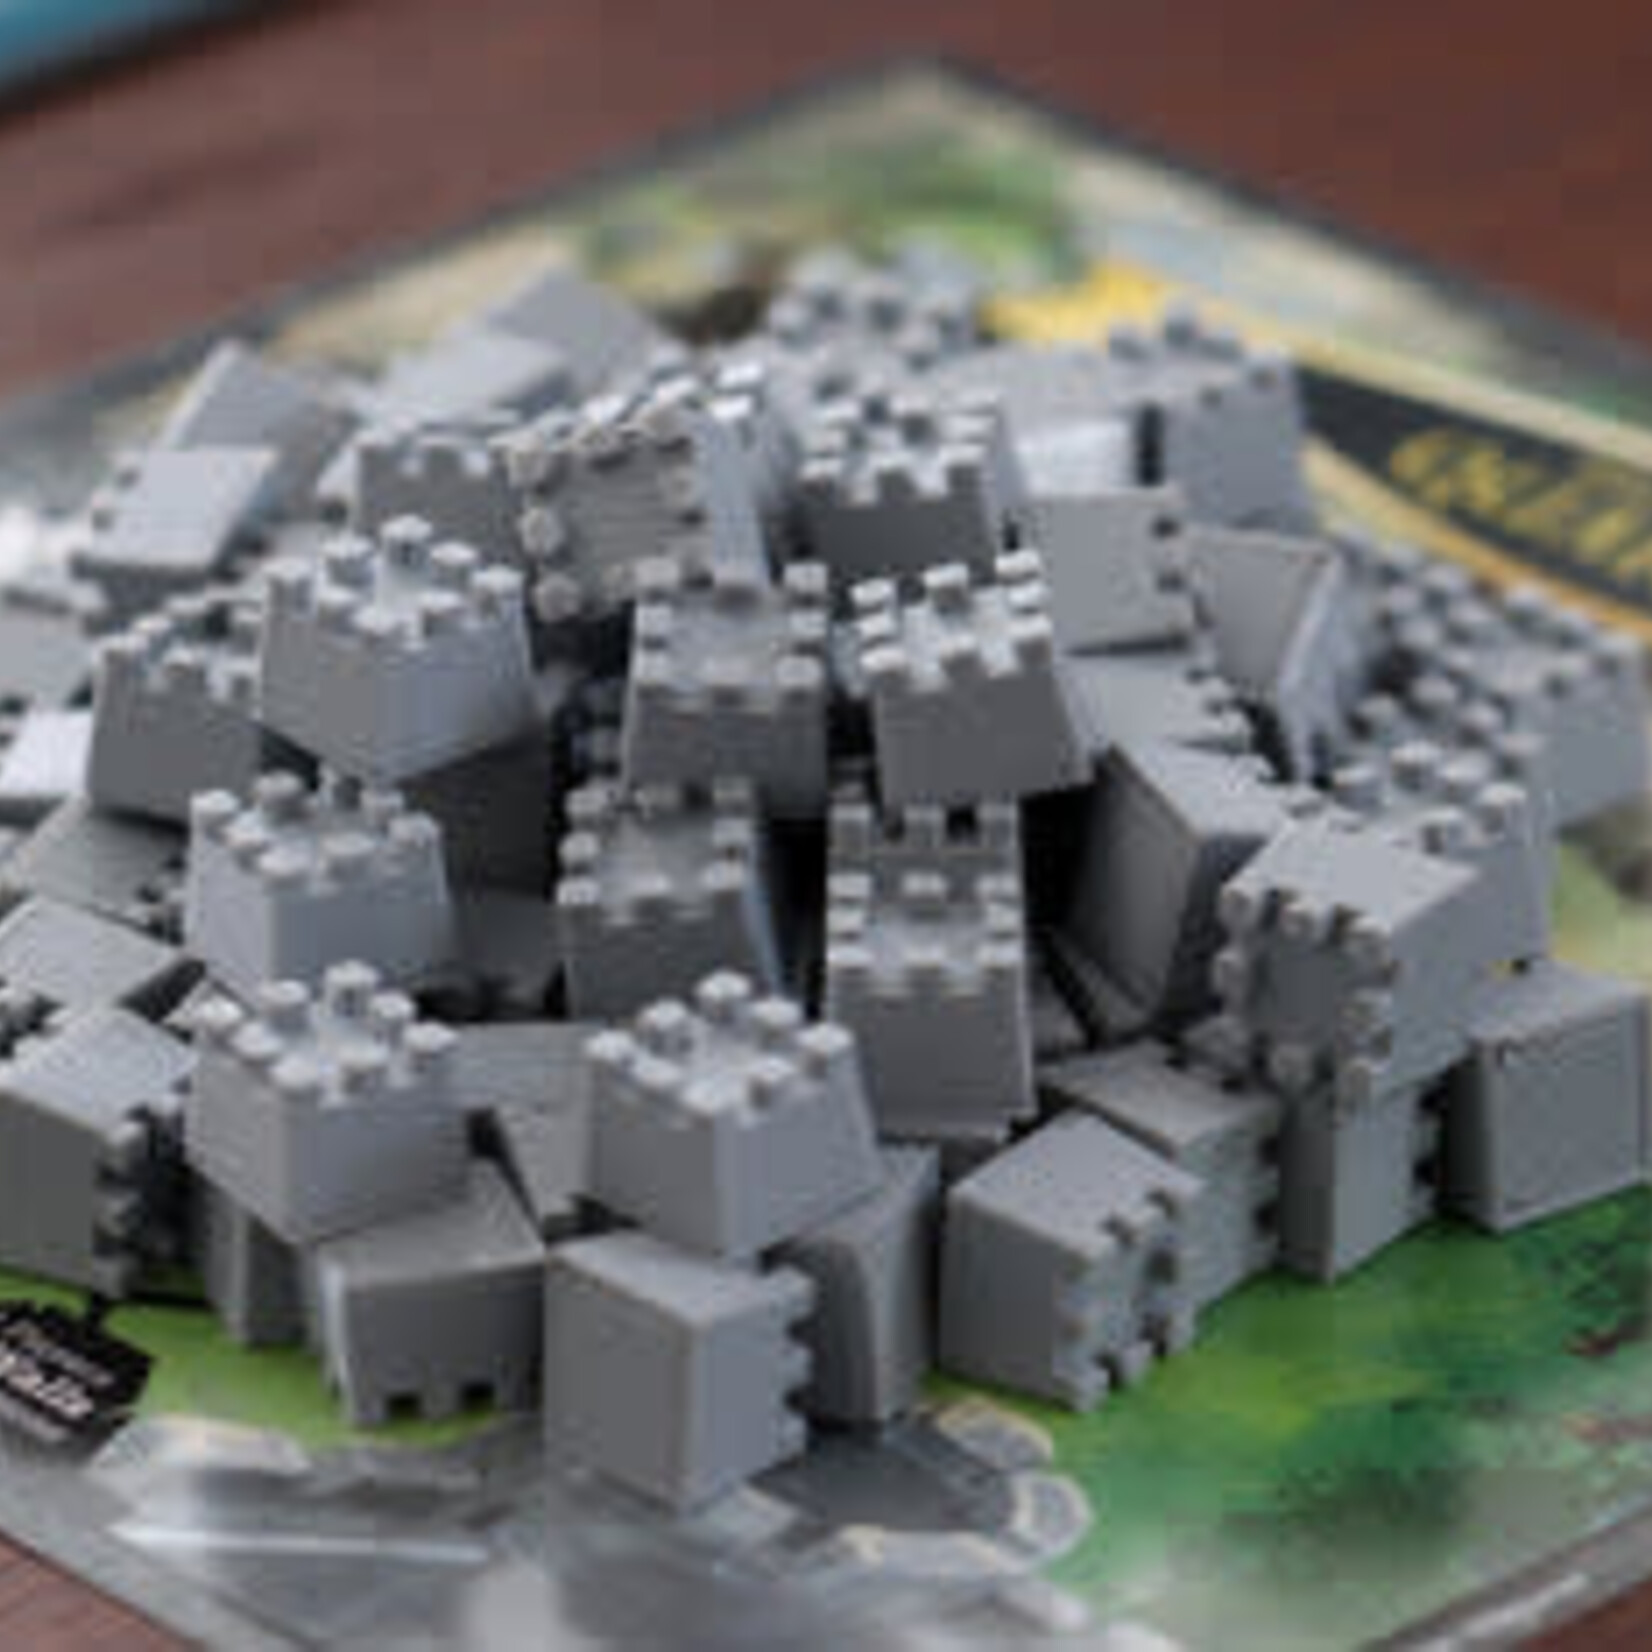 Praetorian Board Games CastleScape Board Game - Kickstarter Edition